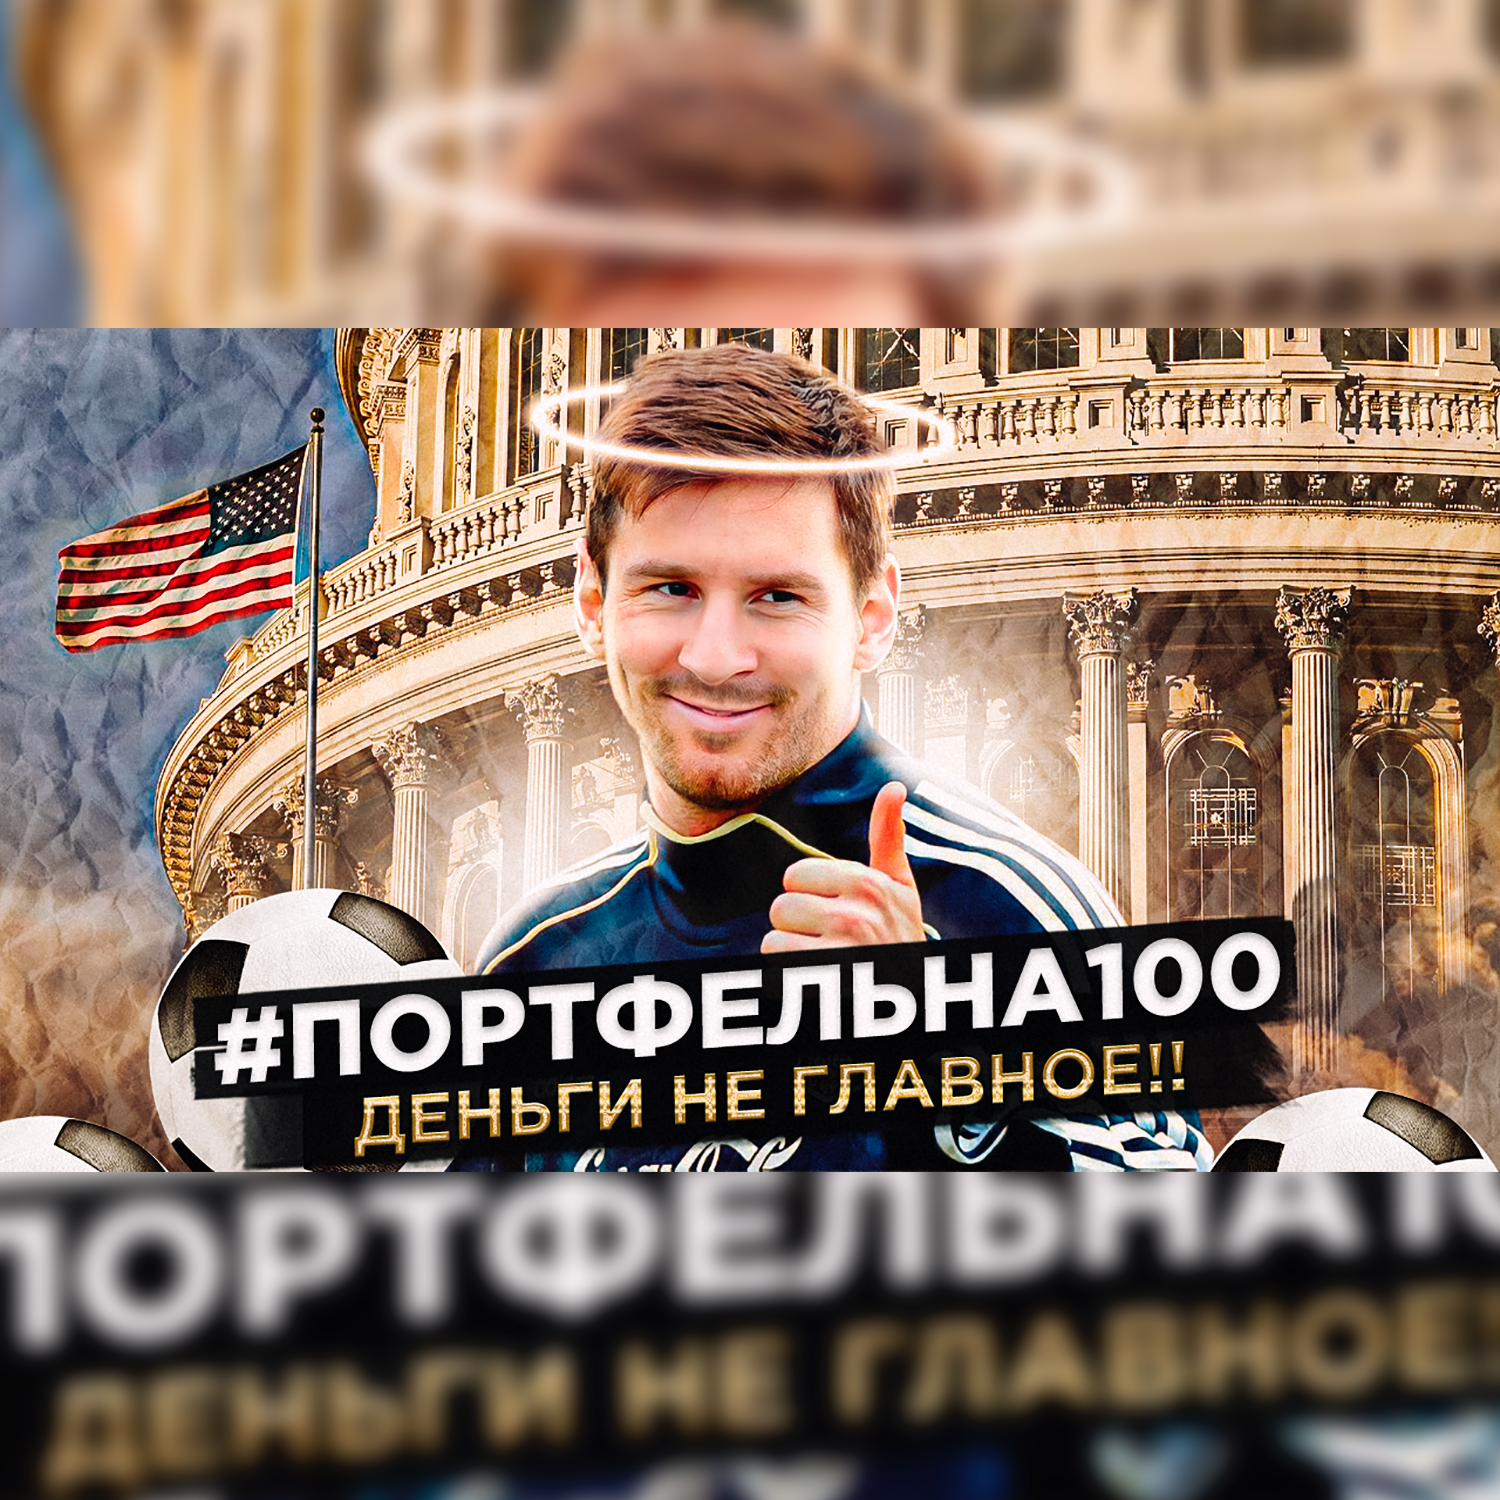 Деньги не главное! #Портфельна100 podcast poster